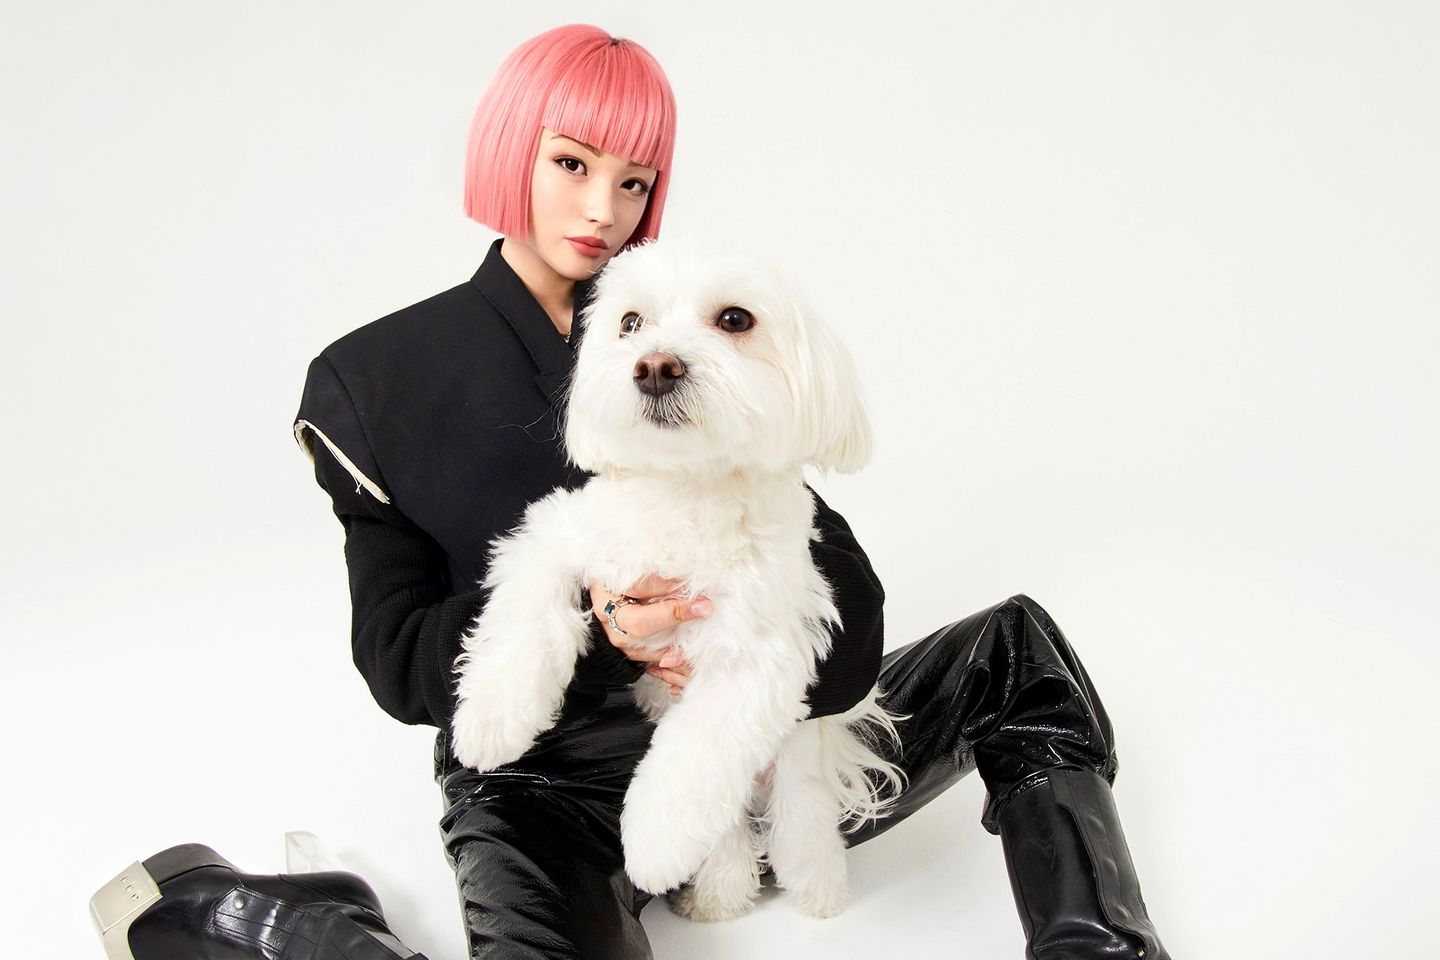 Virtuelle junge Frau mit pinken Haaren und einem Hund